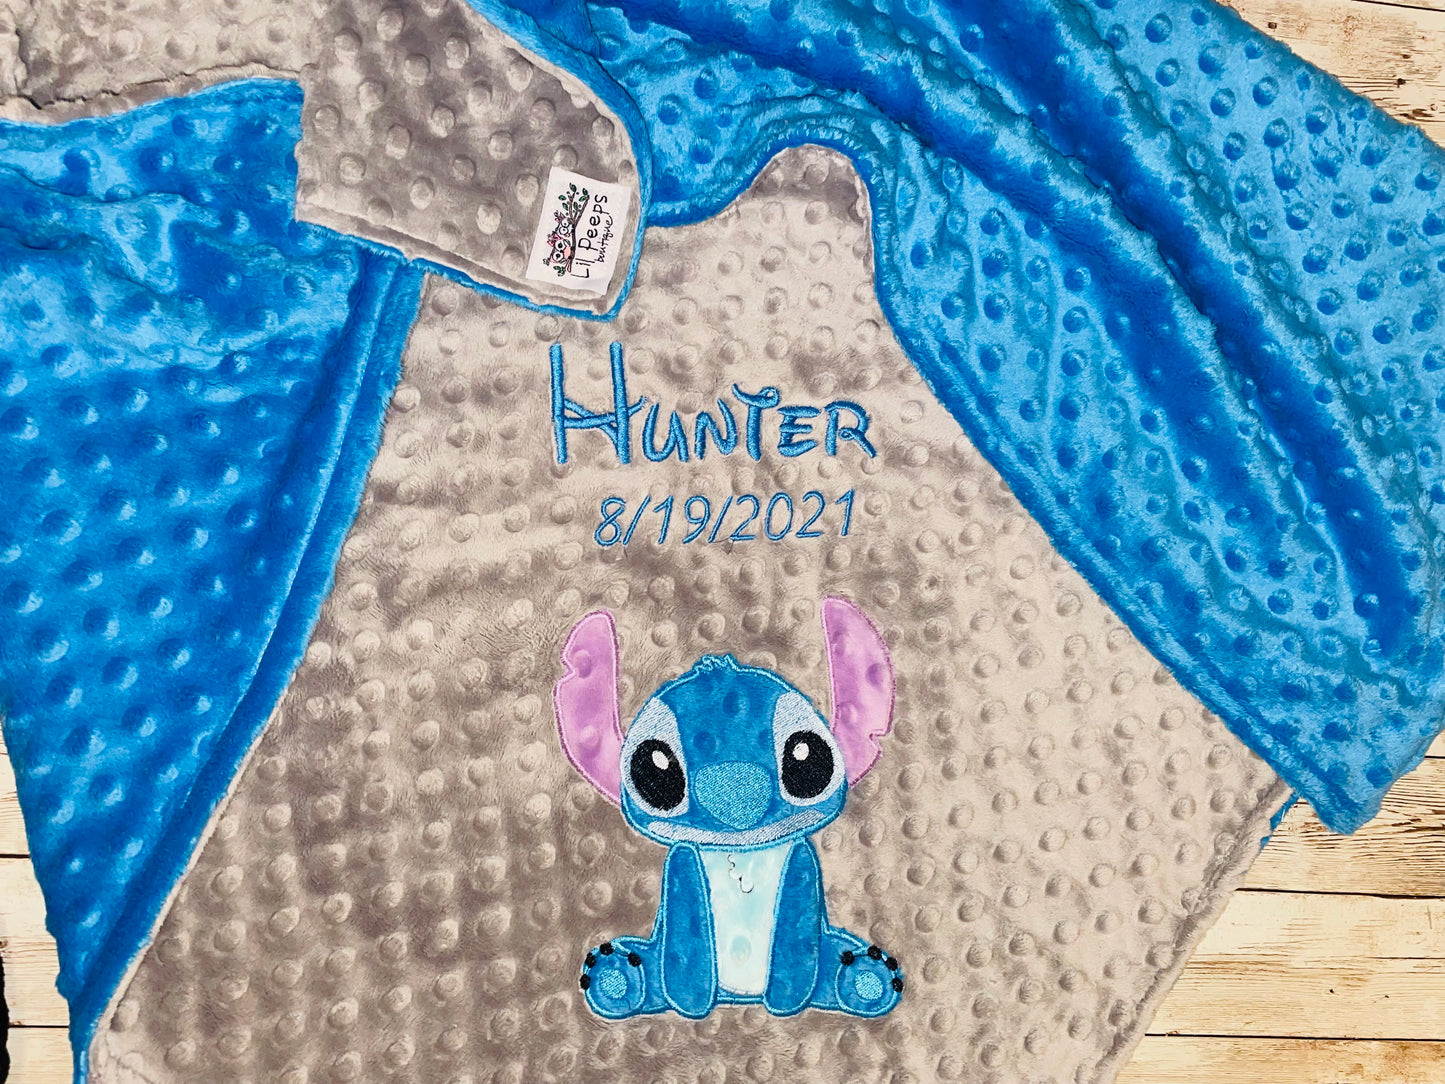 Personalized Stitch Minky Baby Blanket - Gray and Blue Minky - Custom Monogram